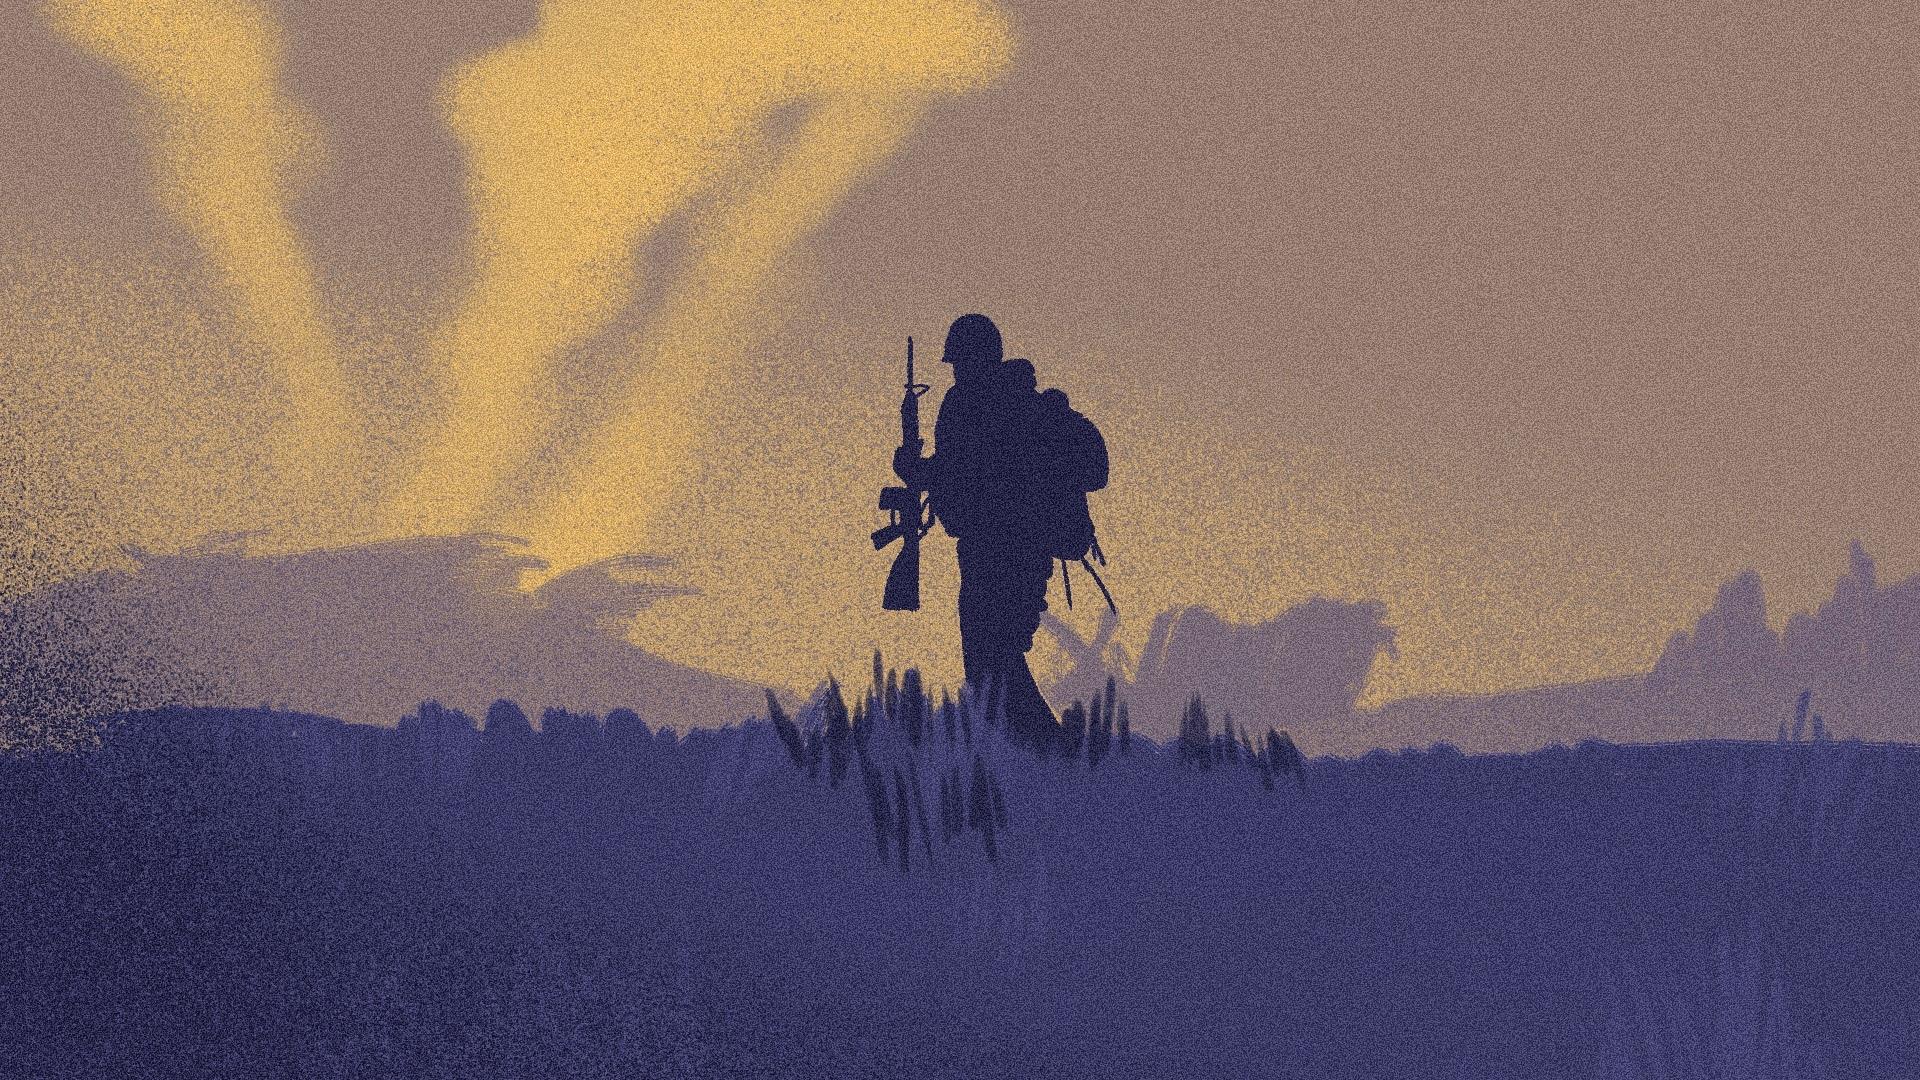 Sylwetka żołnierza z bronią na tle krajobrazu, na niebie widać smugi dymu.